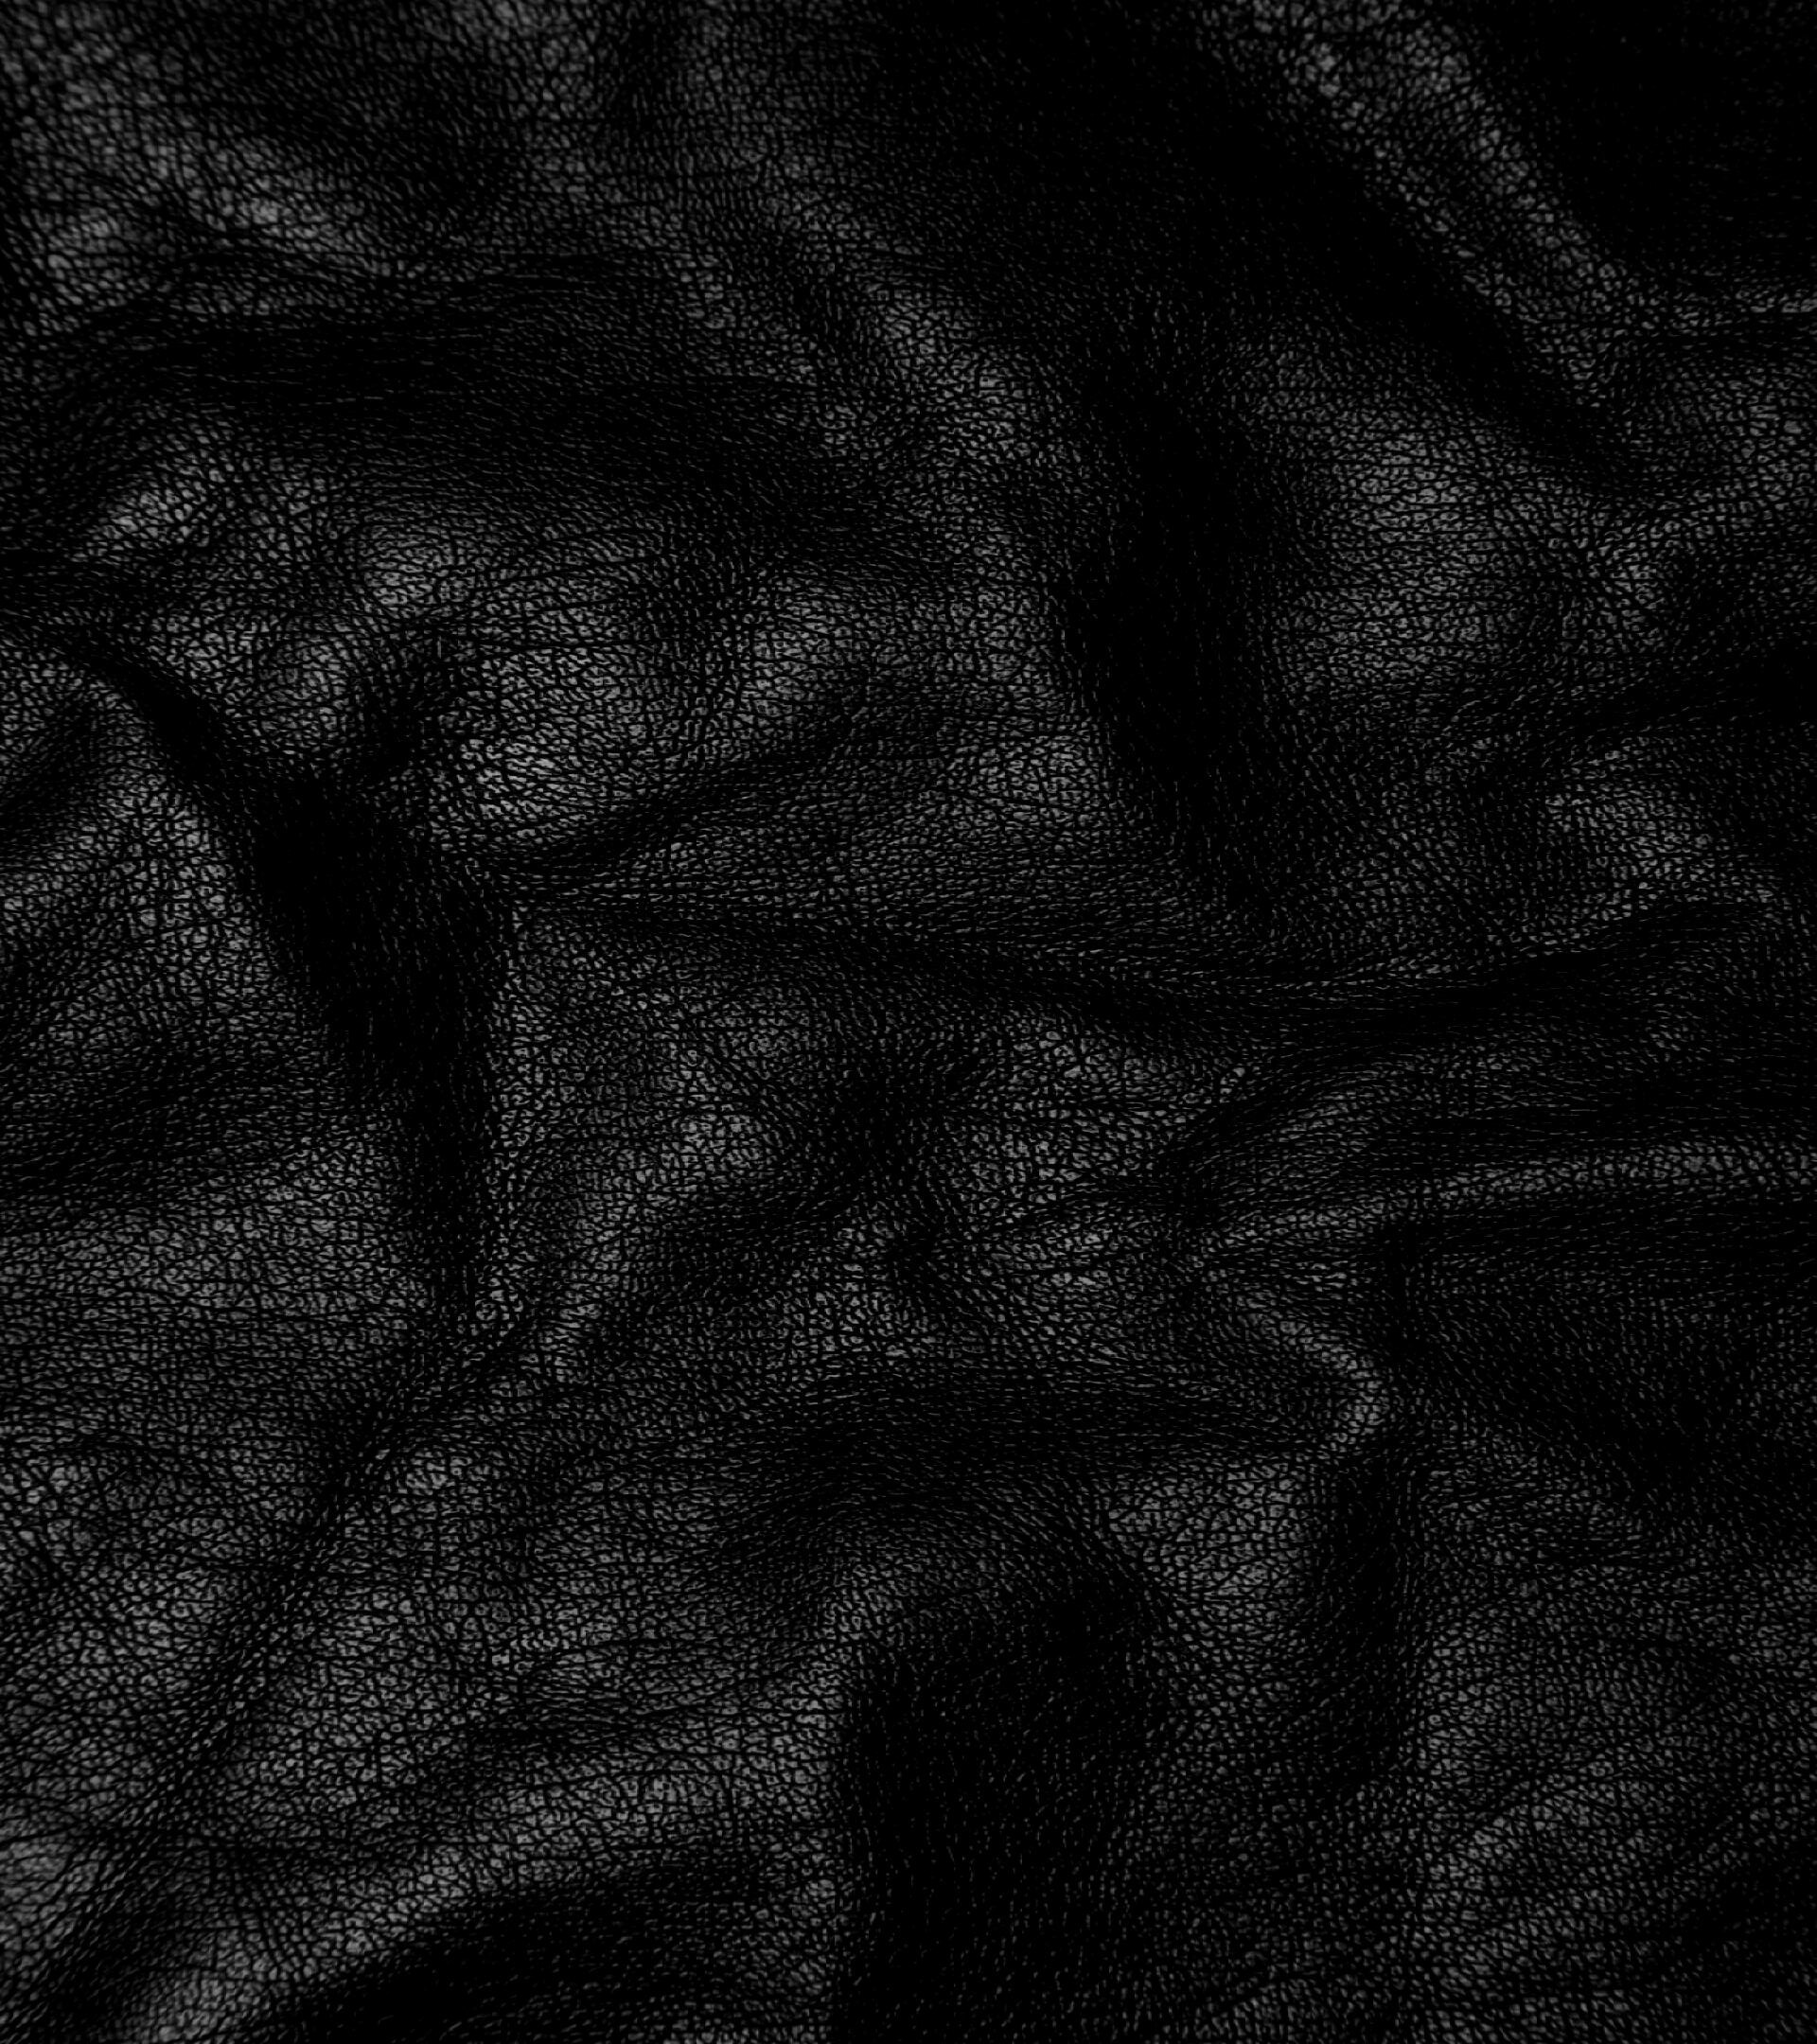 1920x2160 black_leather-wallpaper-105169 (...).jpg, 1MiB, 